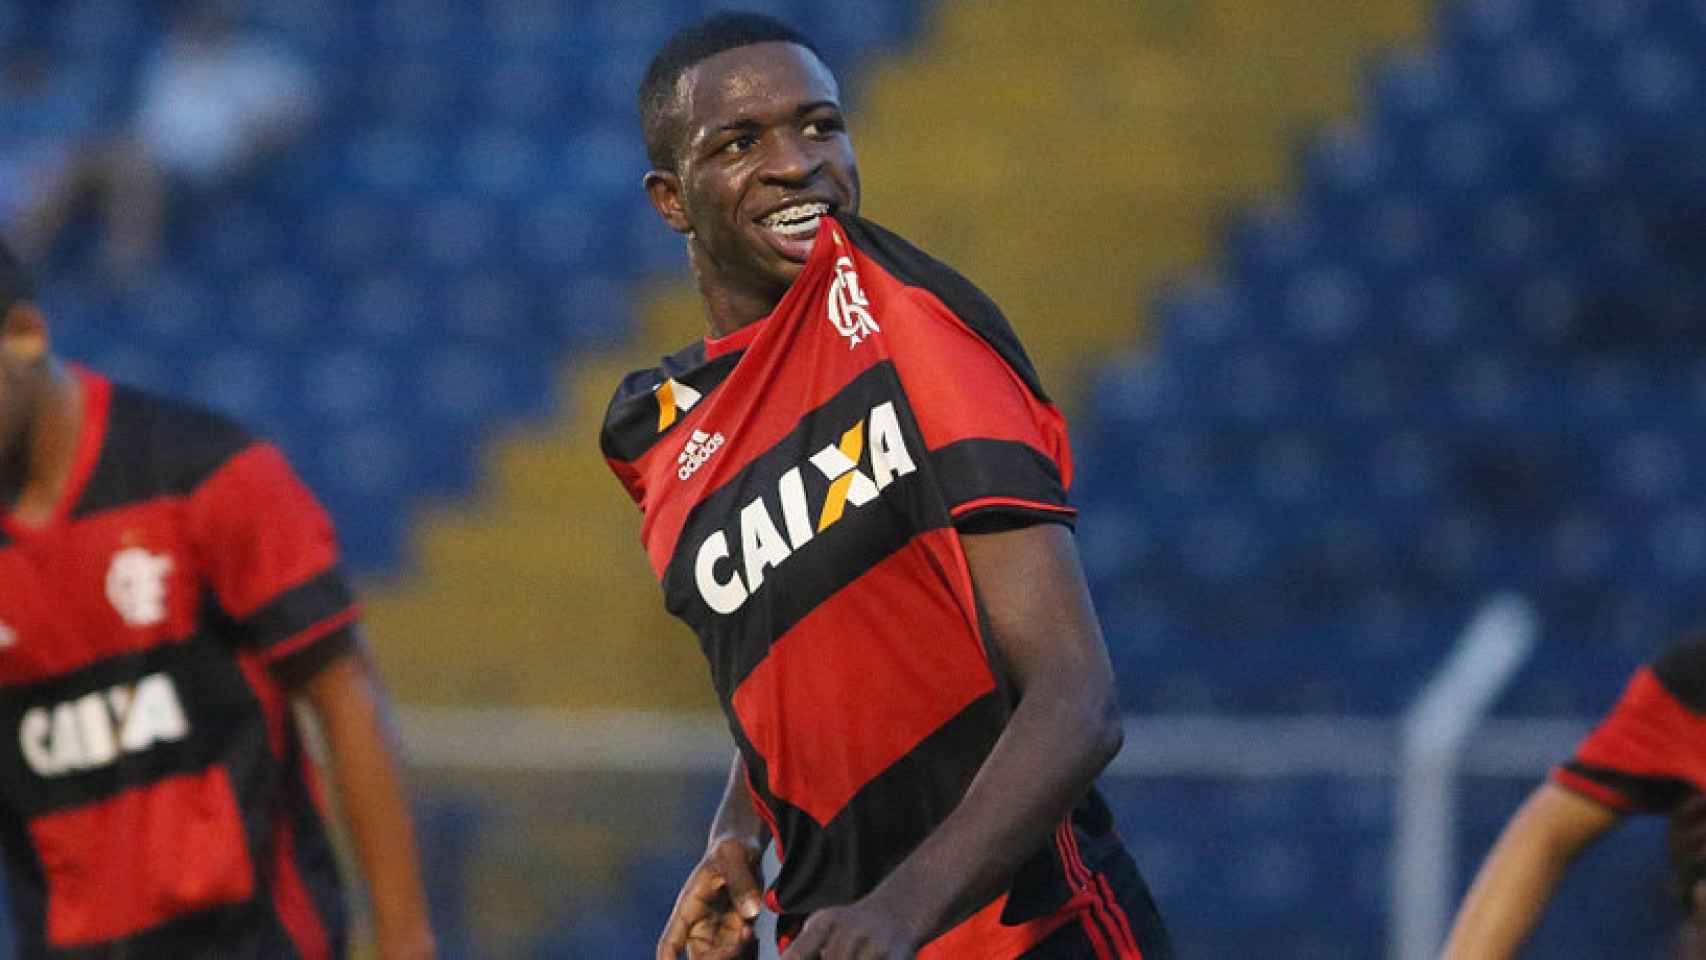 Vinicius Junior, la nueva promesa del fútbol brasileño. Foto: flamengo.com